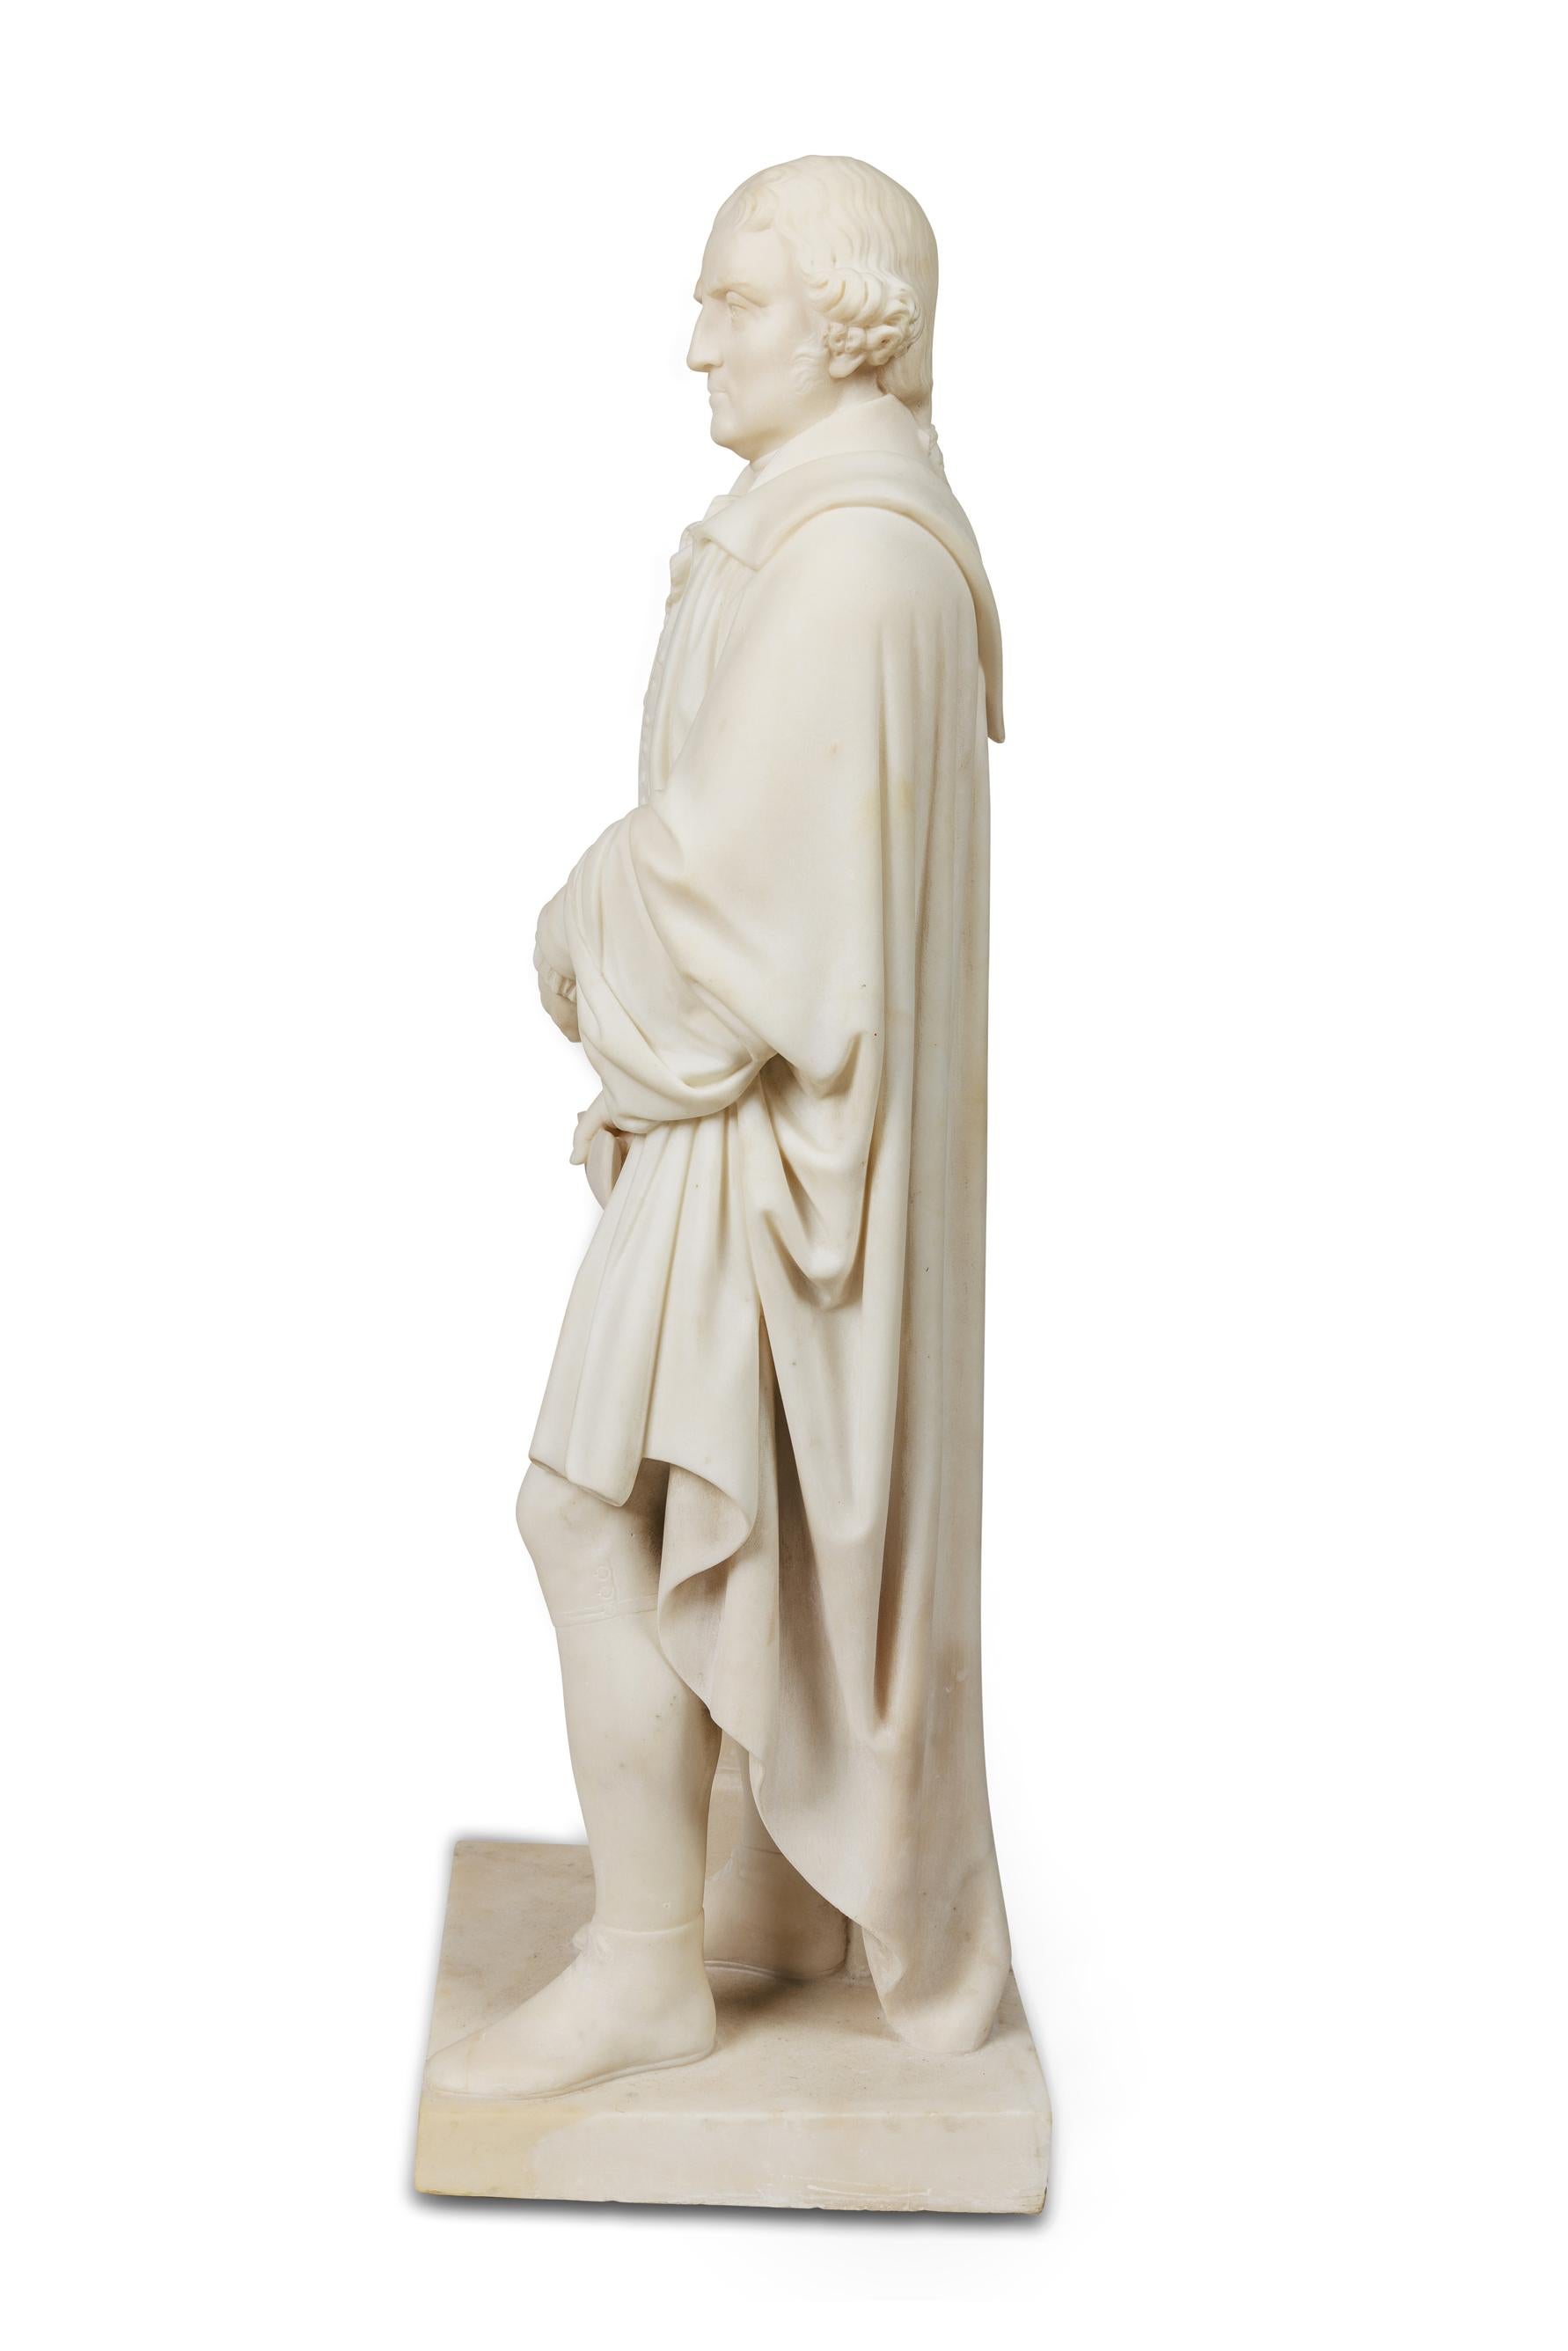 Eine seltene und wichtige amerikanische Skulptur aus weißem Marmor von Thomas Jefferson, der die Unabhängigkeitserklärung hält. CIRCA 1870, nach dem Vorbild von Horatio Stone (1808 -1875).

Eingeschrieben auf der Schriftrolle: Die